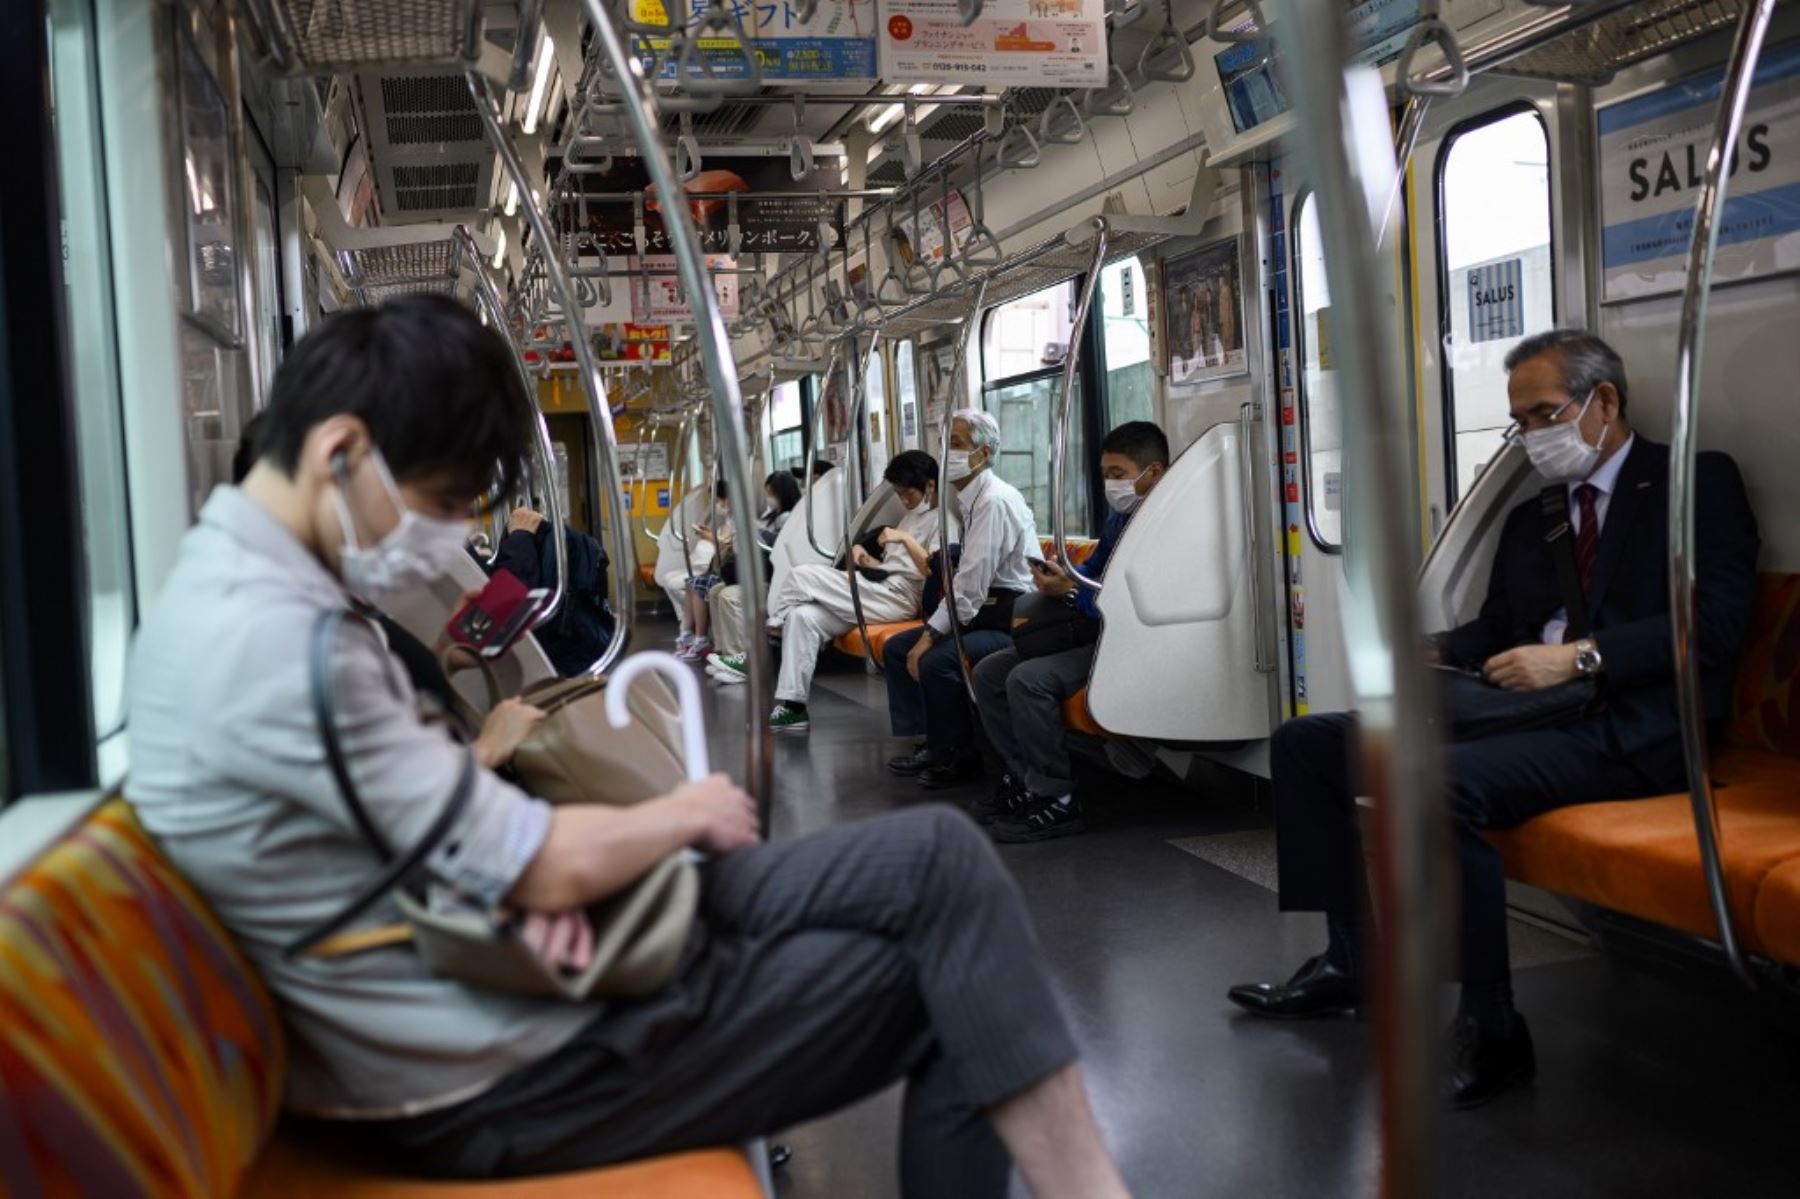 Personas con máscaras faciales en medio de la preocupación por la propagación del coronavirus COVID-19 en un tren en Tokio. Foto: AFP